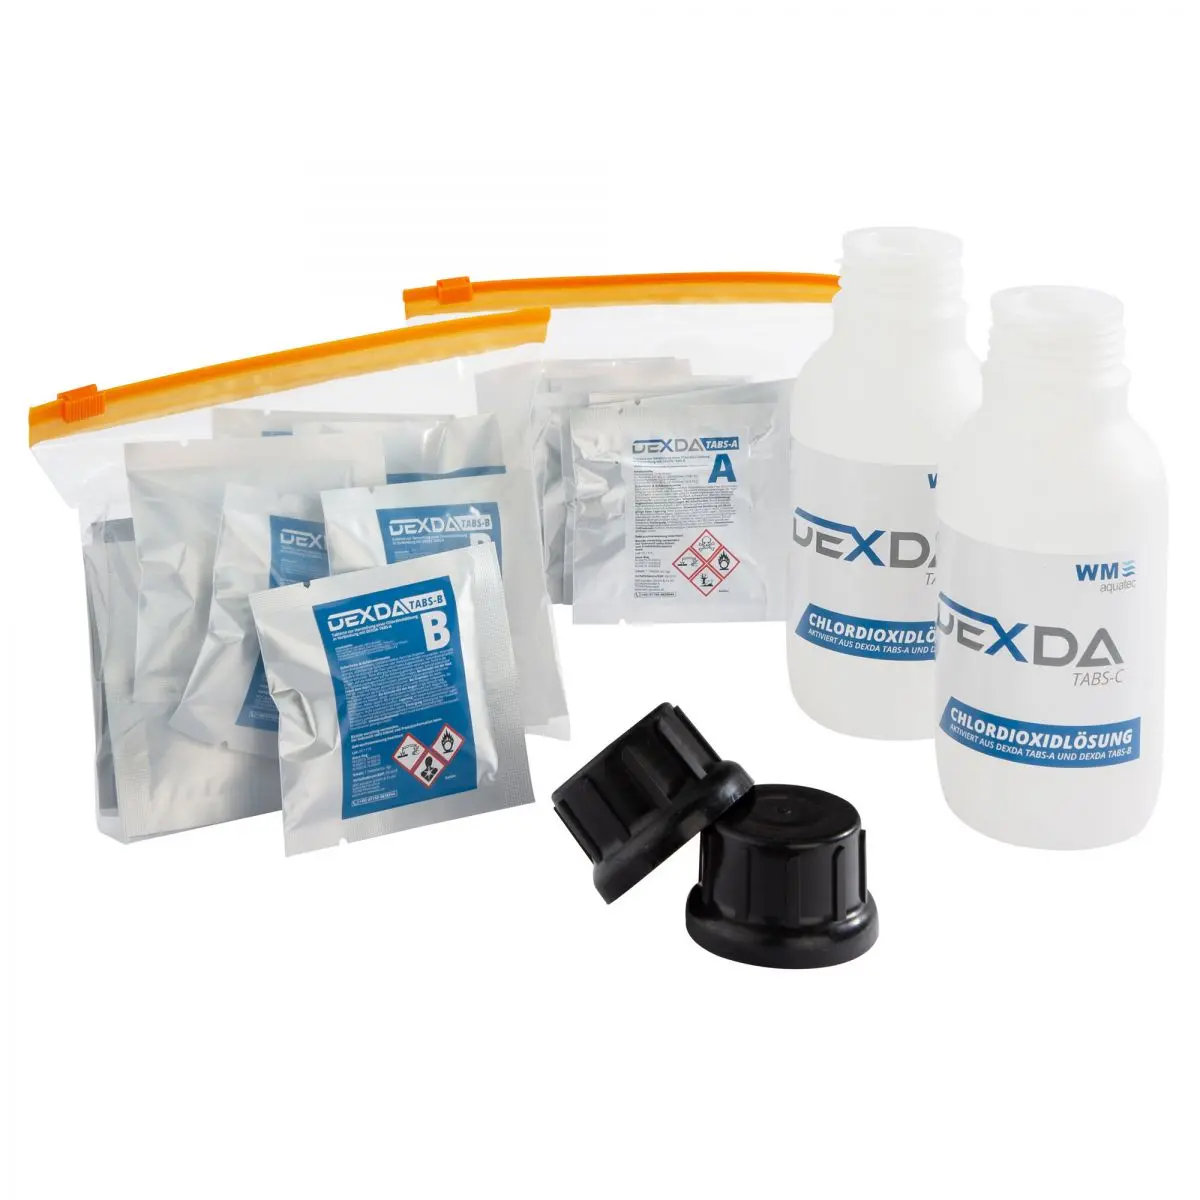 Dexda Tabs Professional utántöltő készlet - 12 db A és Tabs-B fülből + 2 palack